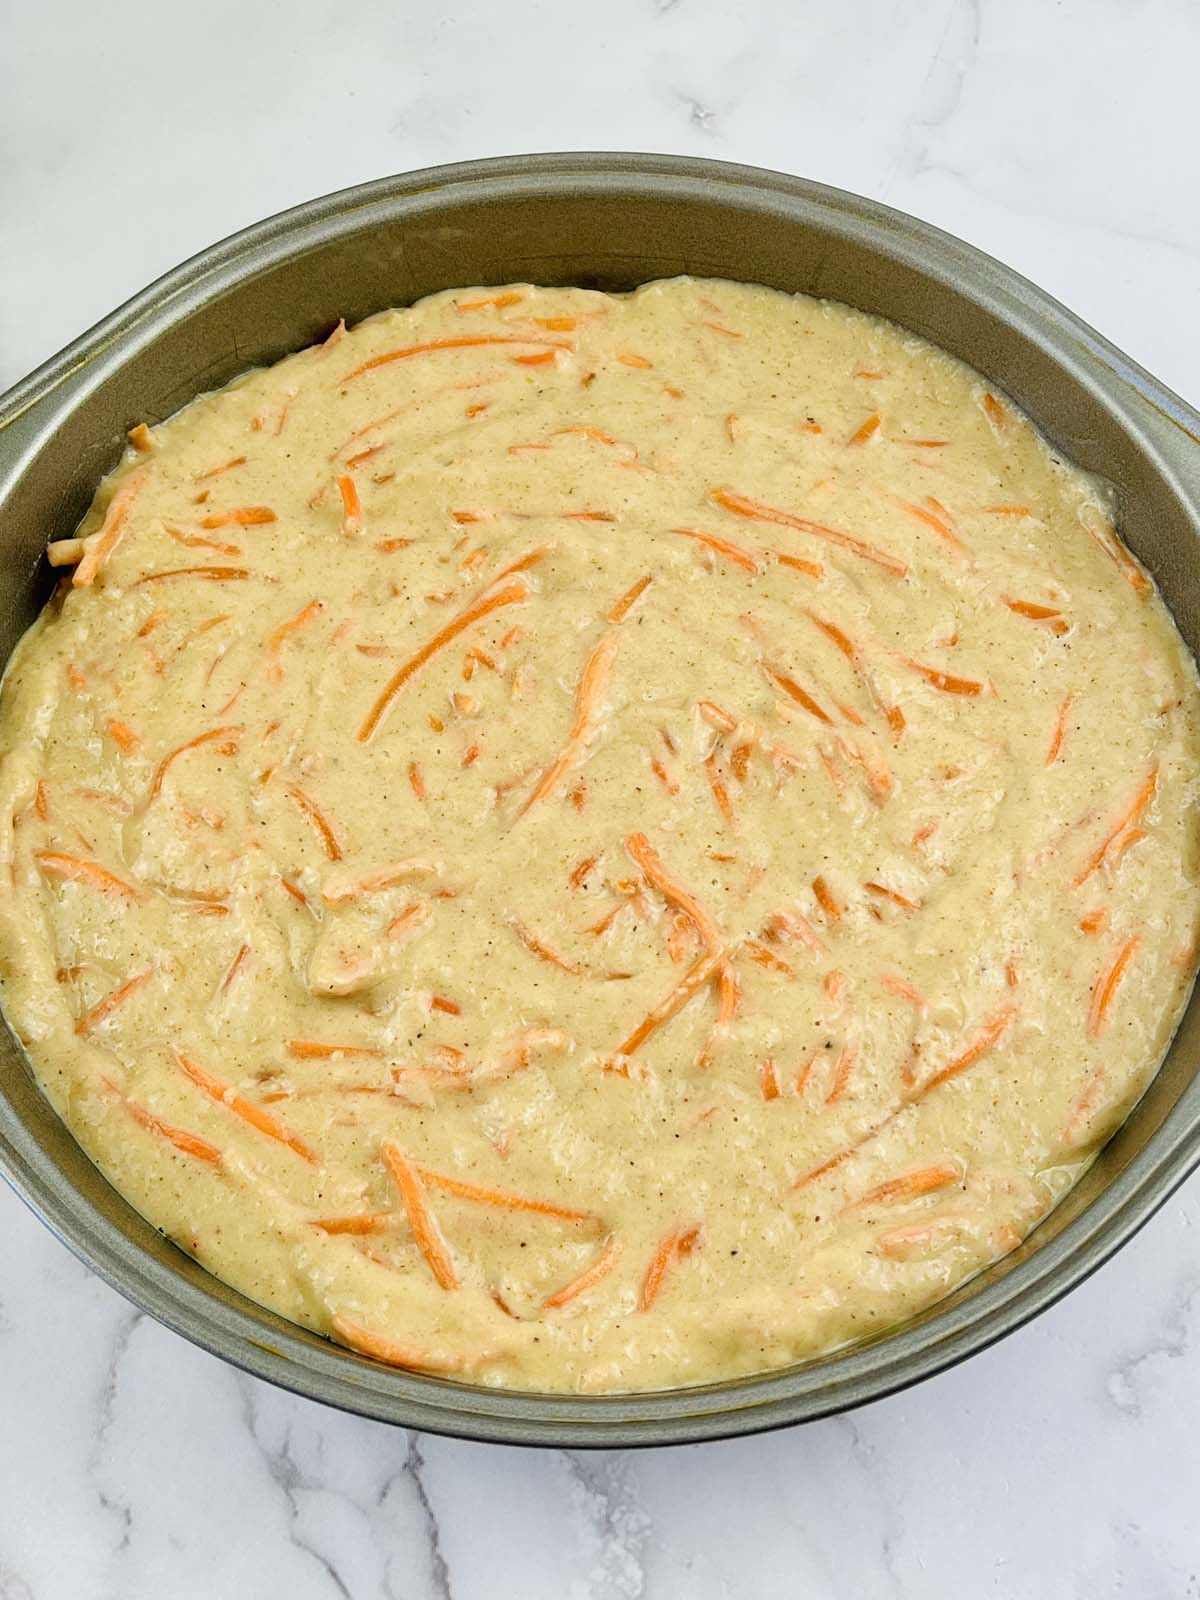 Carrot cake batter in a cake pan.